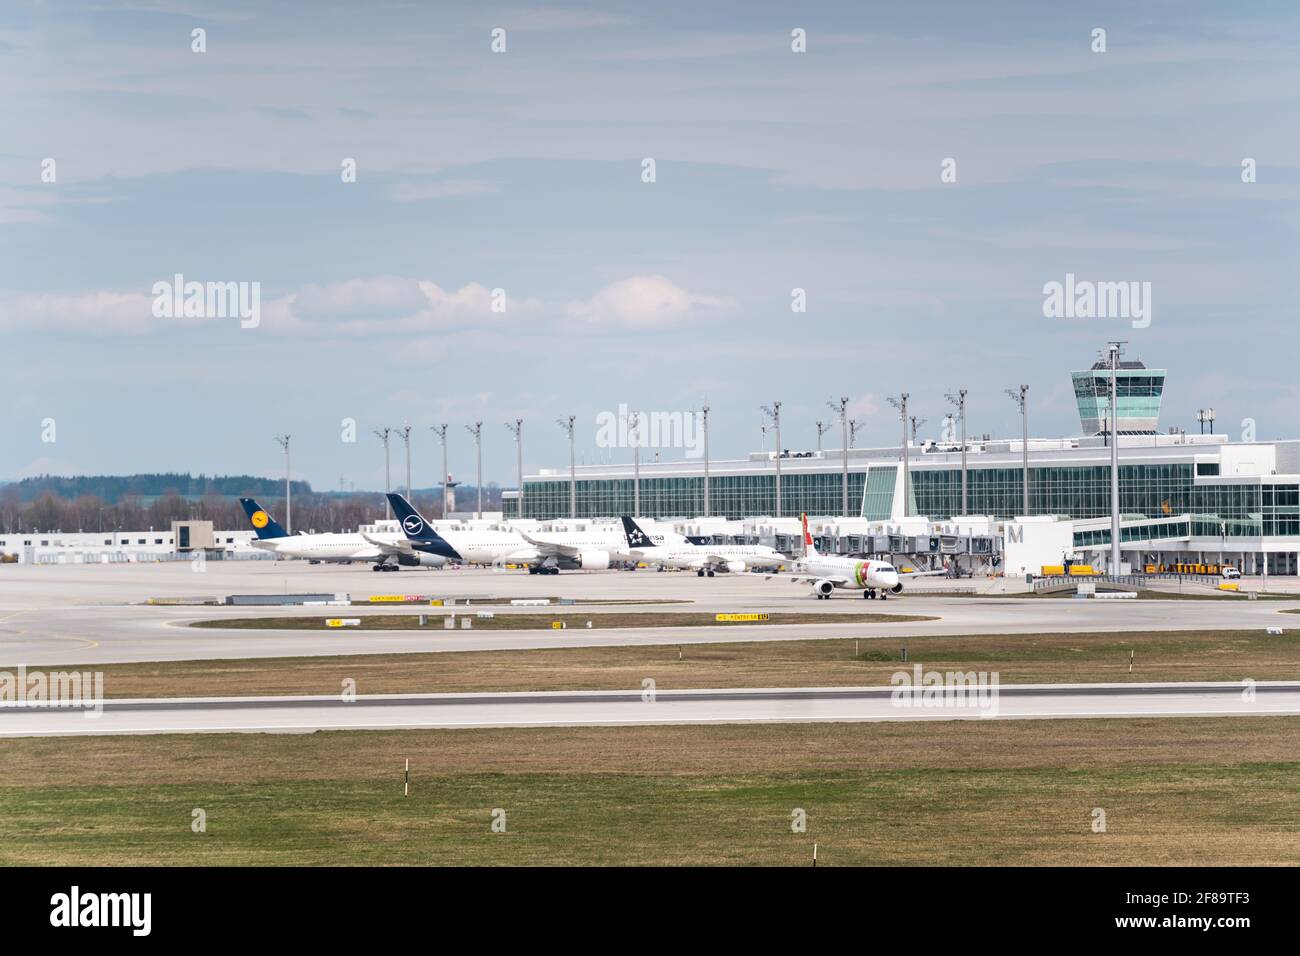 MÜNCHEN, DEUTSCHLAND - 10. Apr 2021: Die Flugzeuge stehen vor dem Flughafenterminal in München. Passagiere können an Bord gehen und das Flugzeug verlassen Stockfoto